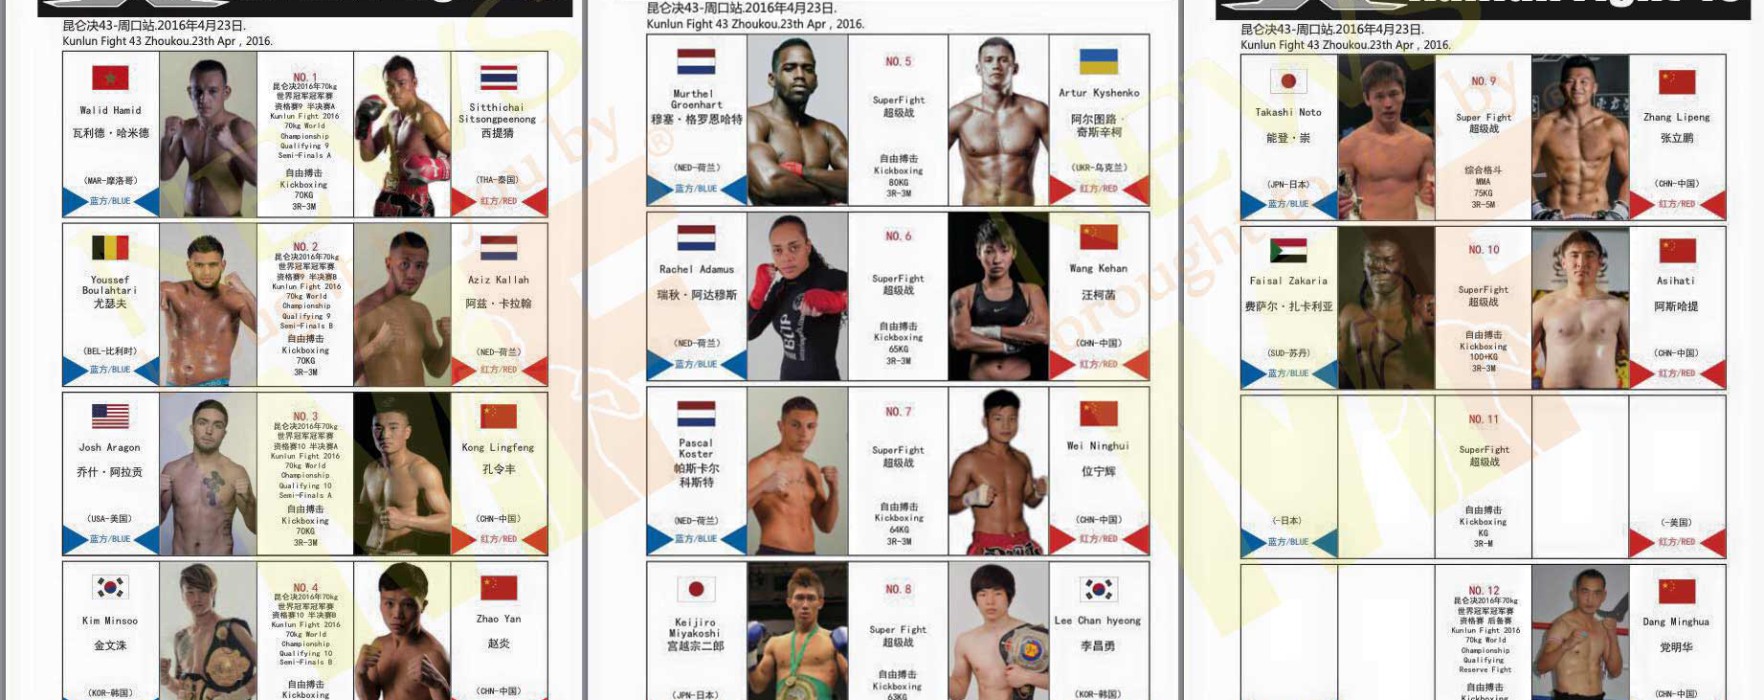 Card: Sittichai, Kyshenko, Groenhart & others at Kunlun Fight 43 – China – 23/04/2016